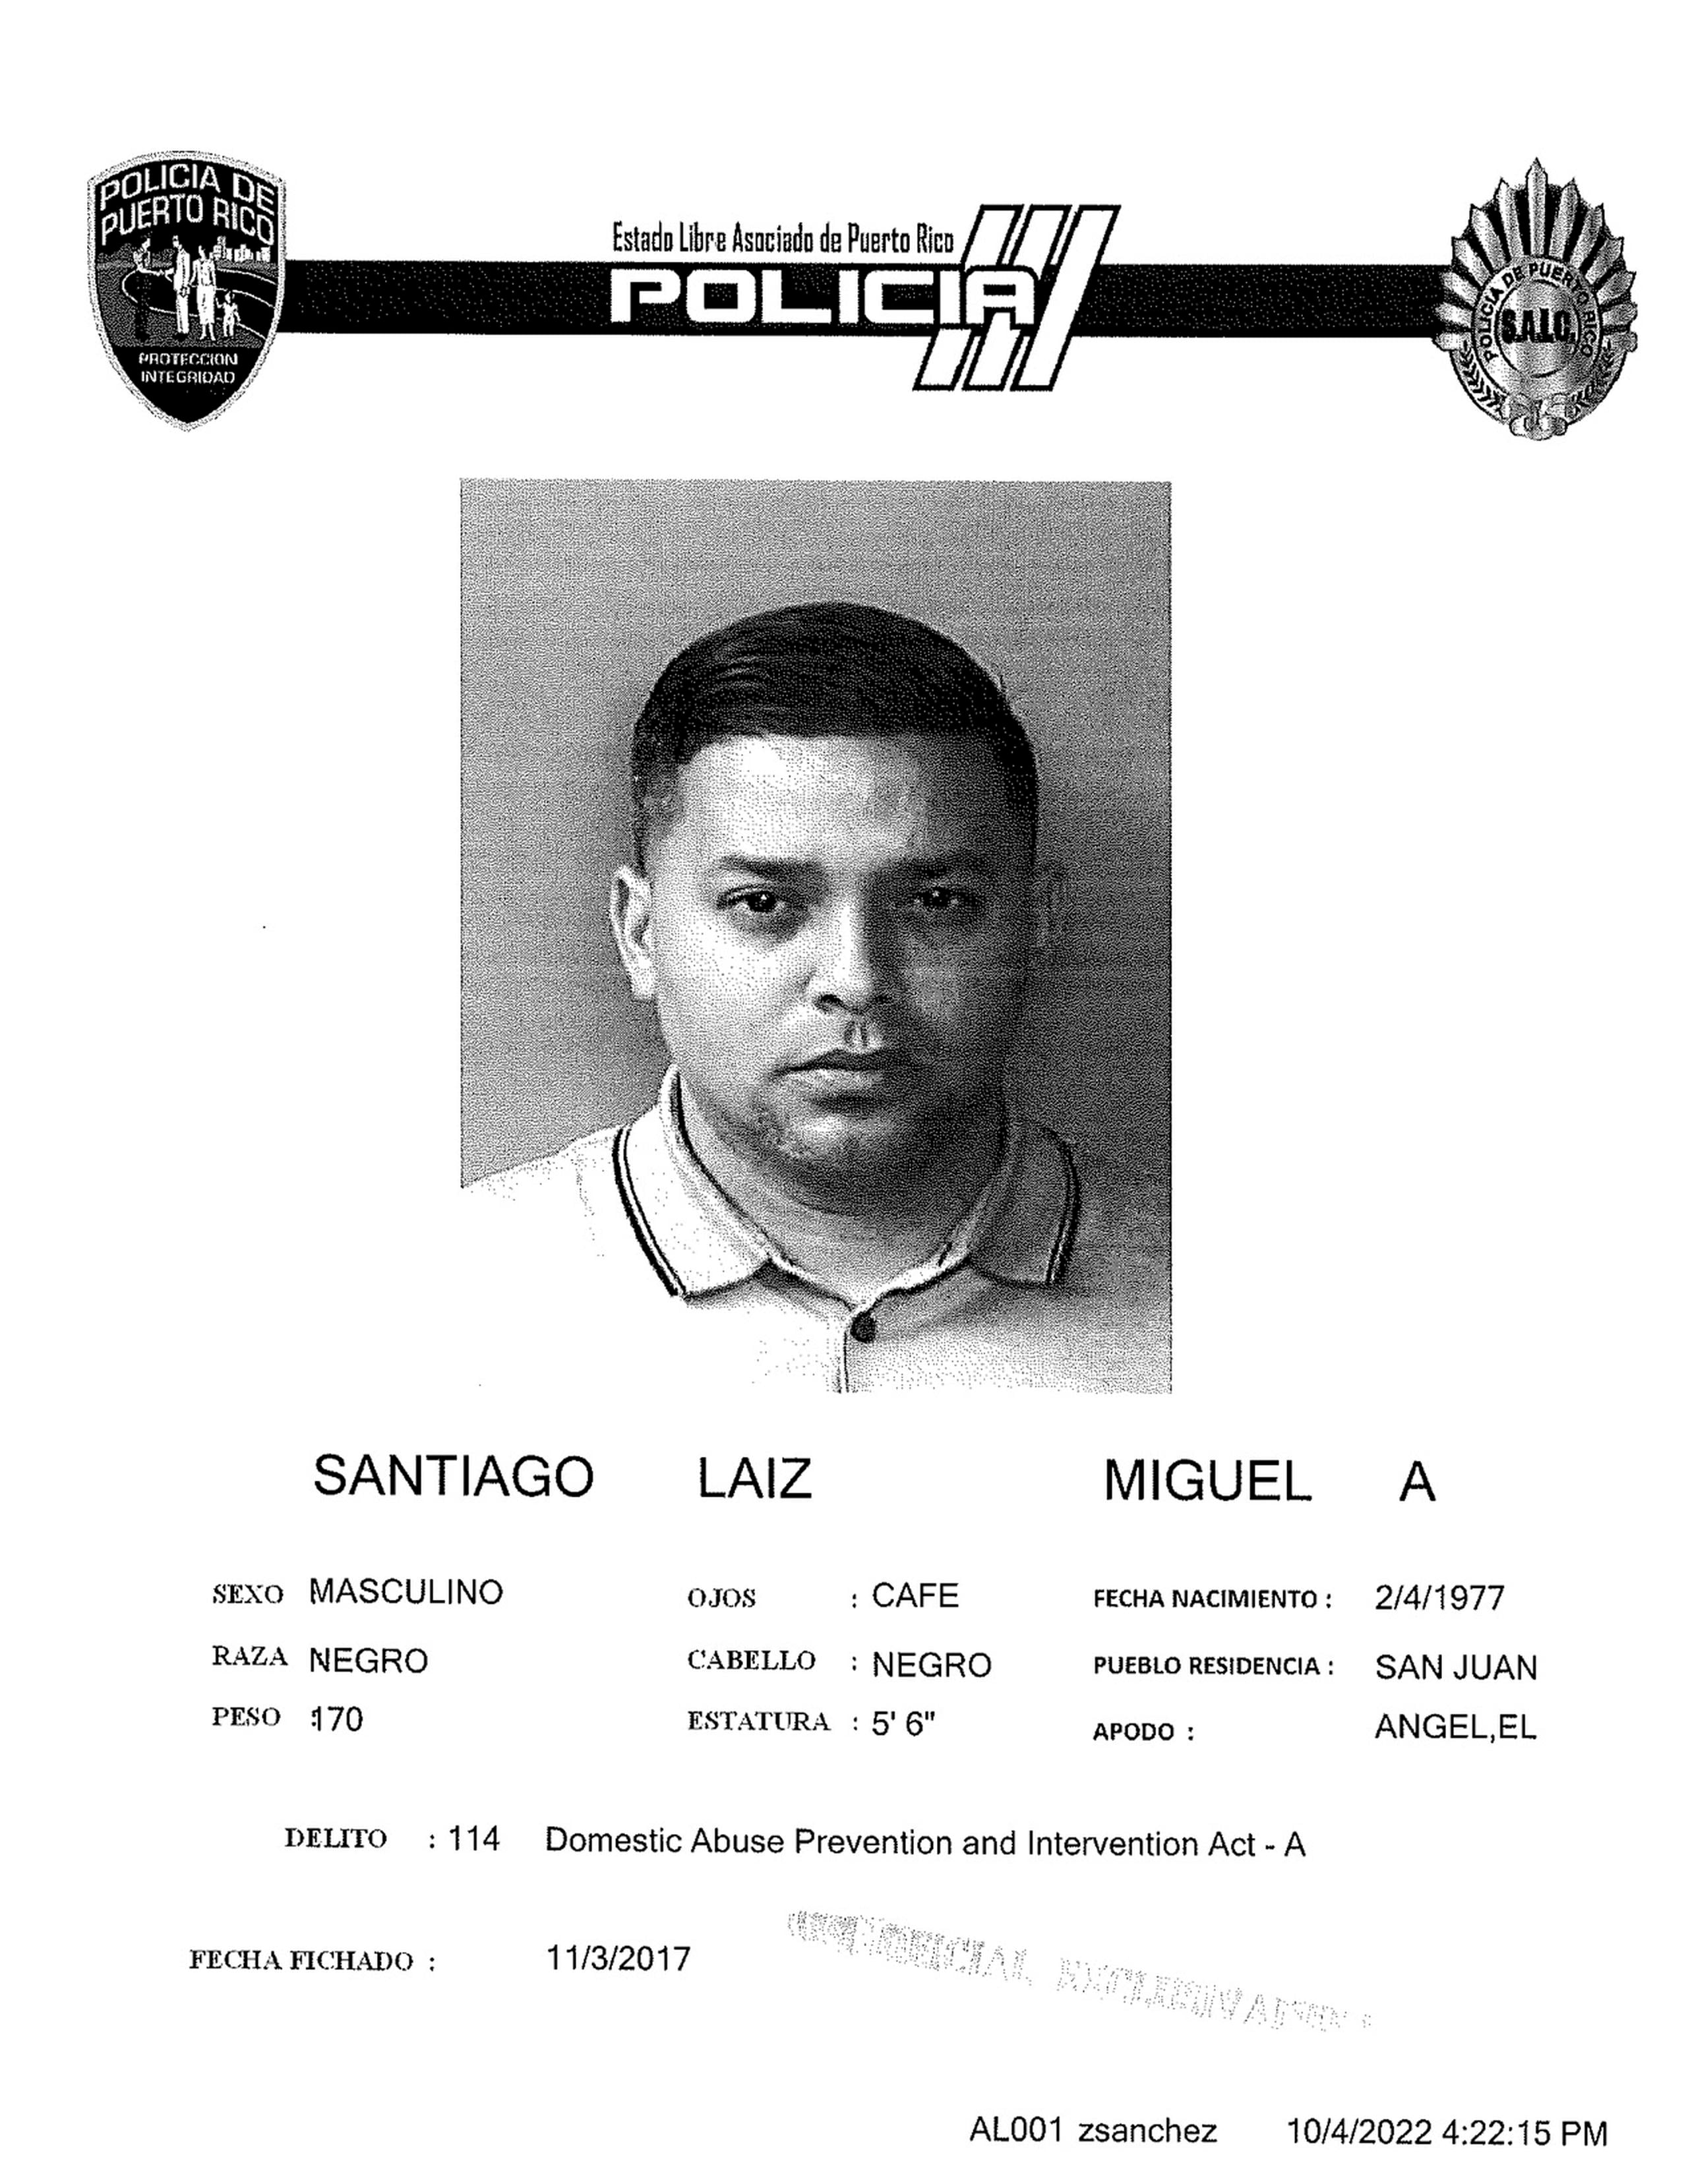 Según la Policía estatal, Miguel Santiago Laiz fue procesado en el 2017 por una alegación de violencia de género.